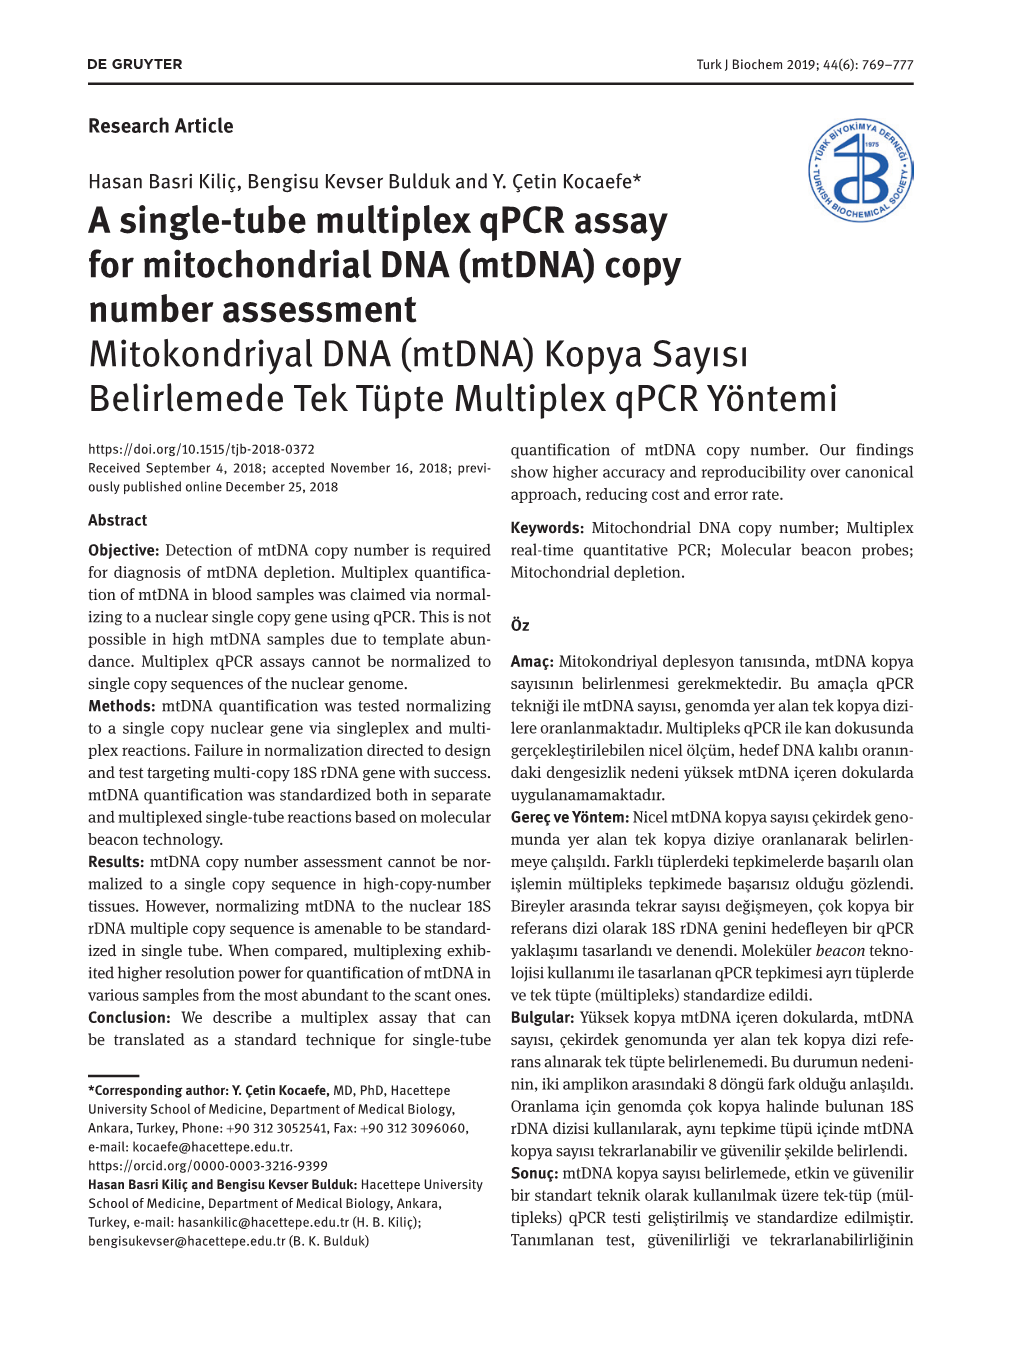 A Single-Tube Multiplex Qpcr Assay for Mitochondrial DNA (Mtdna)